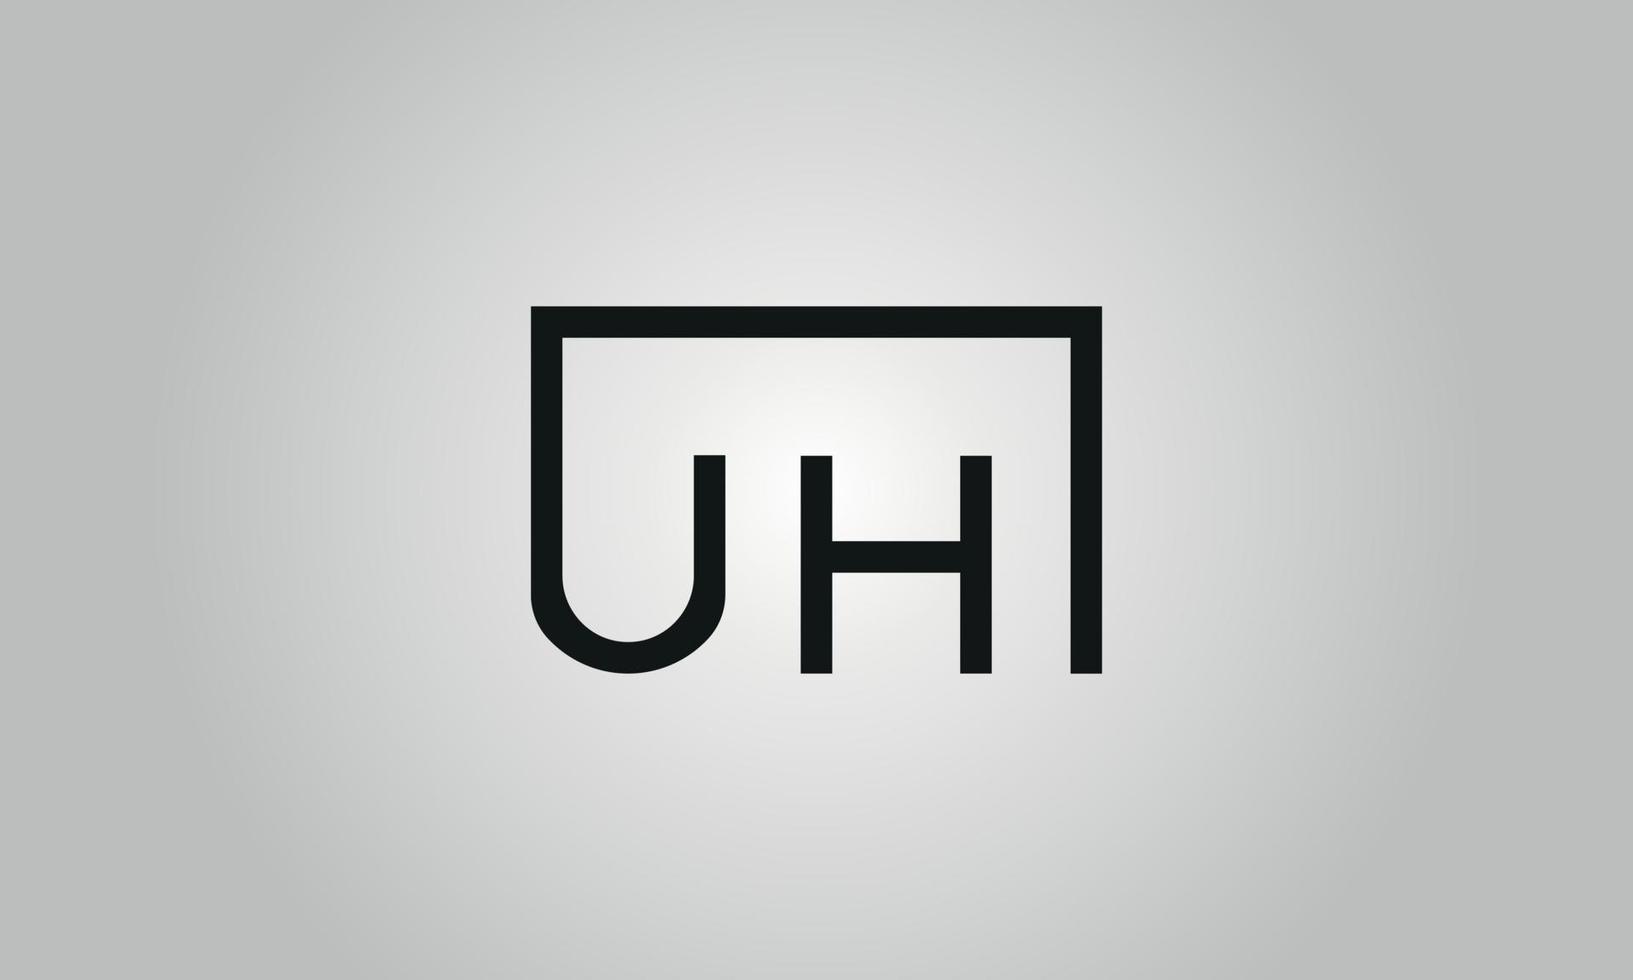 Buchstabe äh Logo-Design. uh logo mit quadratischer form in schwarzen farben vektor kostenlose vektorvorlage.